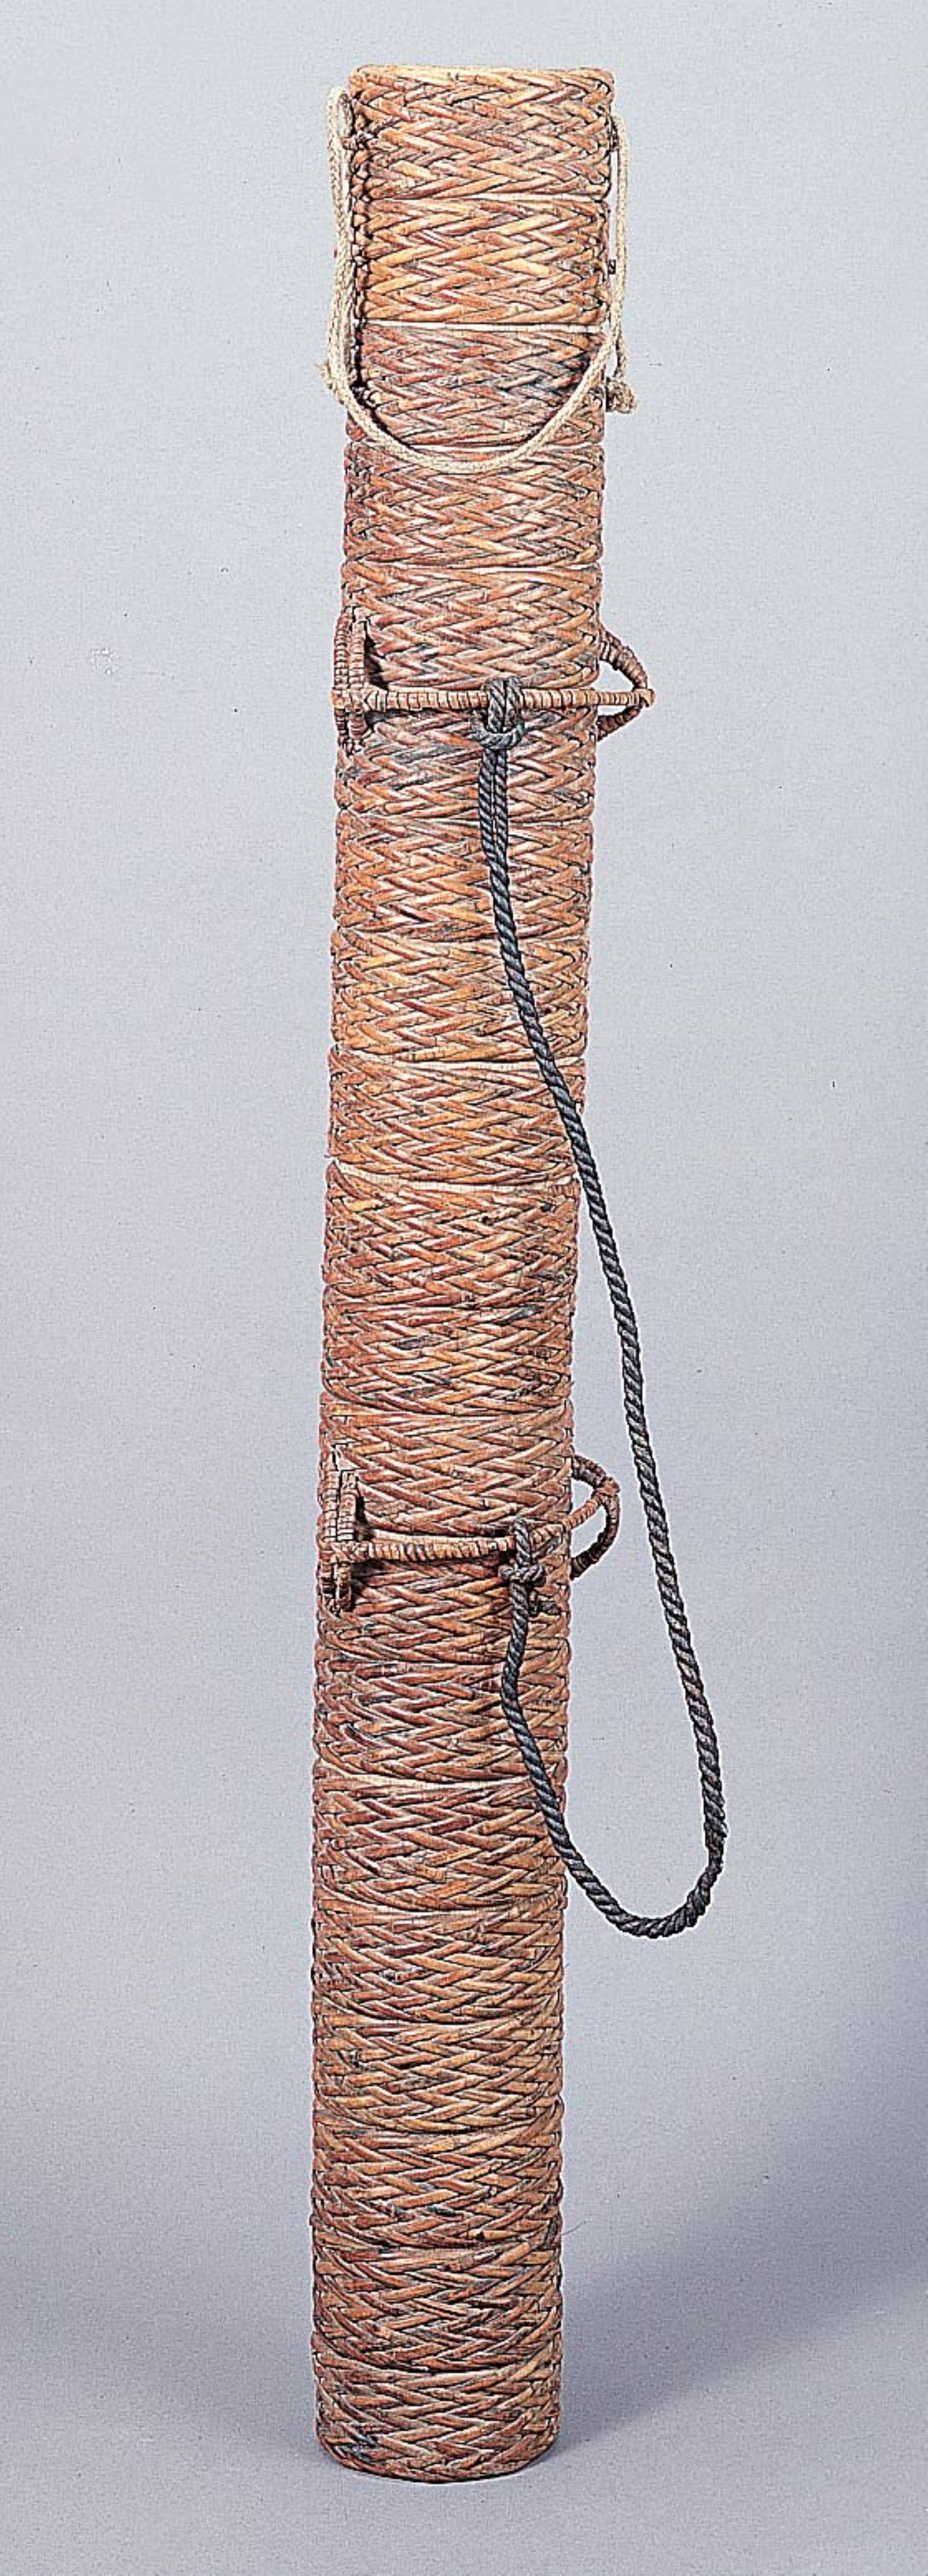 阿美族籐編盛水竹筒 (共1張)